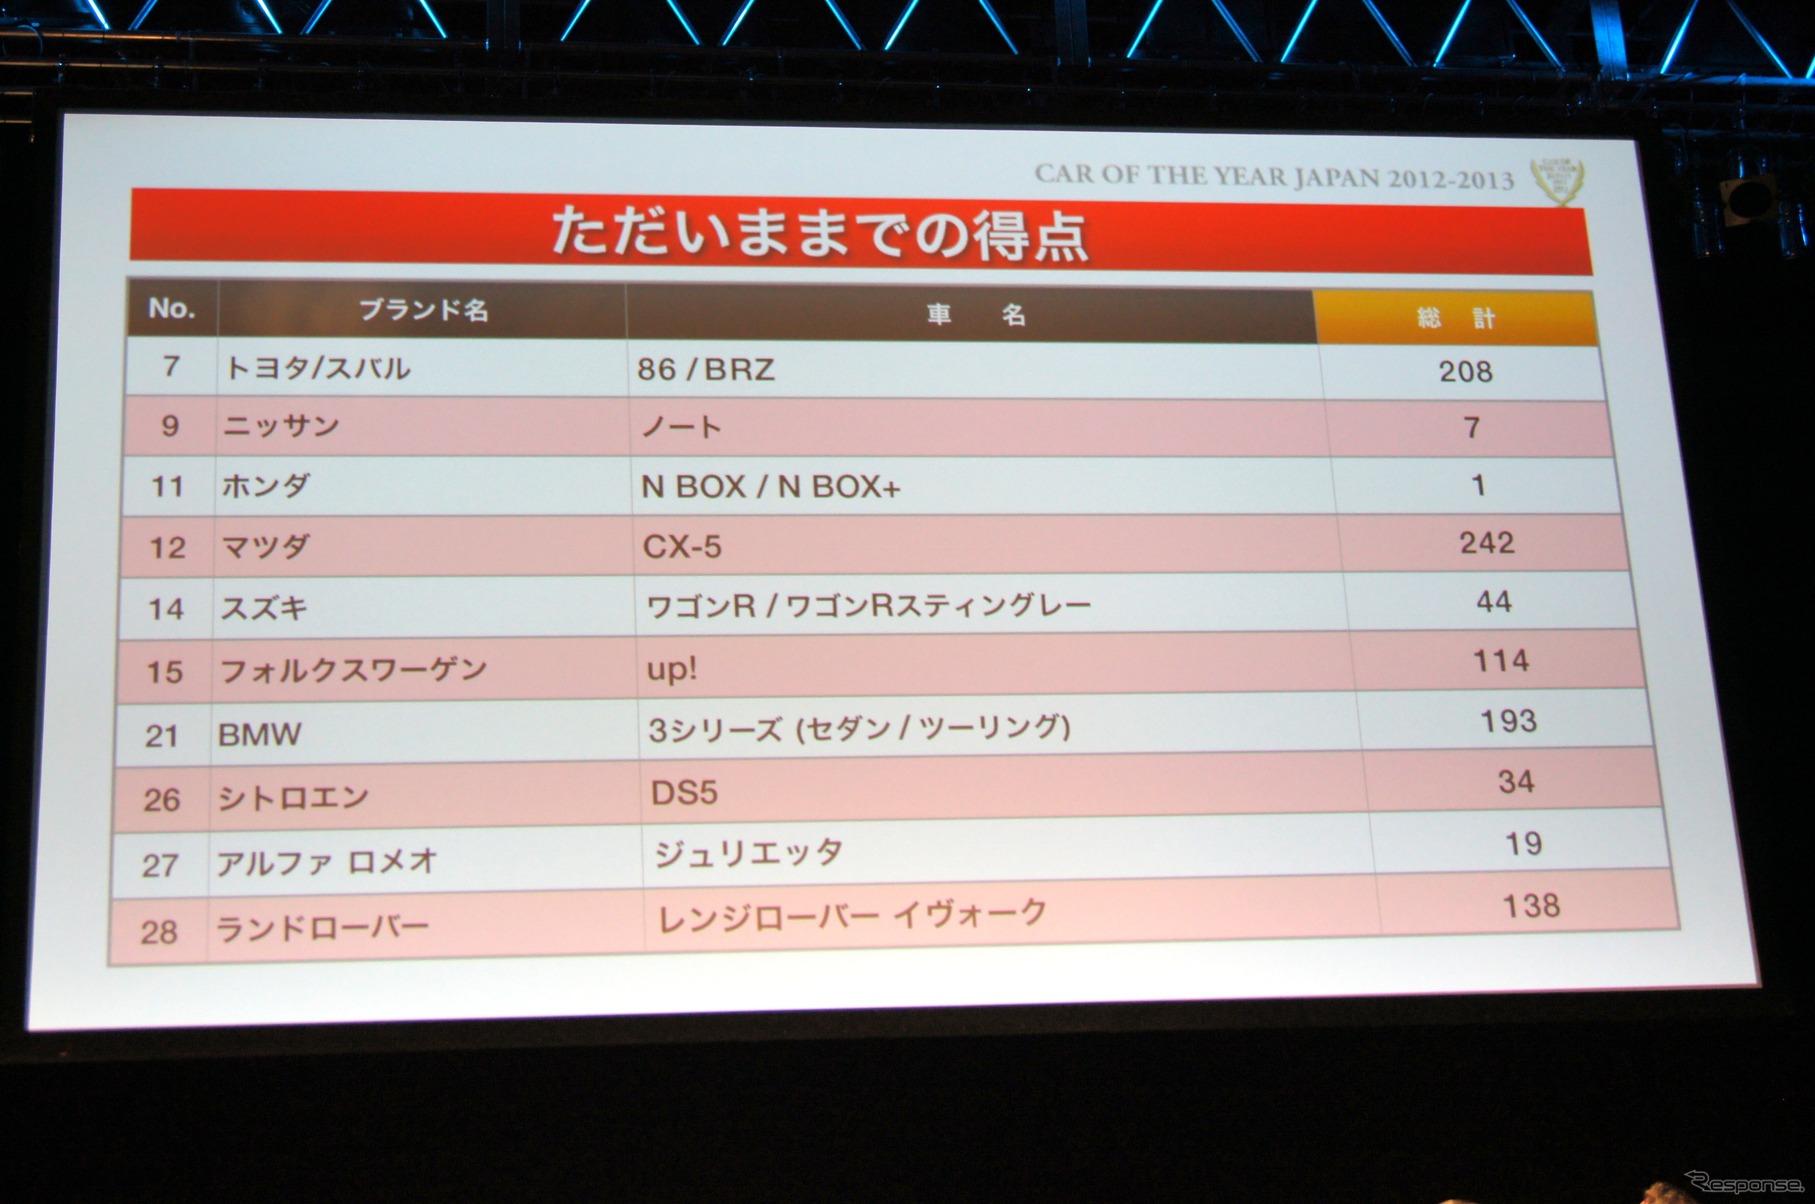 【COTY速報】2012-2013日本カー・オブ・ザ・イヤー開票は残り20名…CX-5がトップ